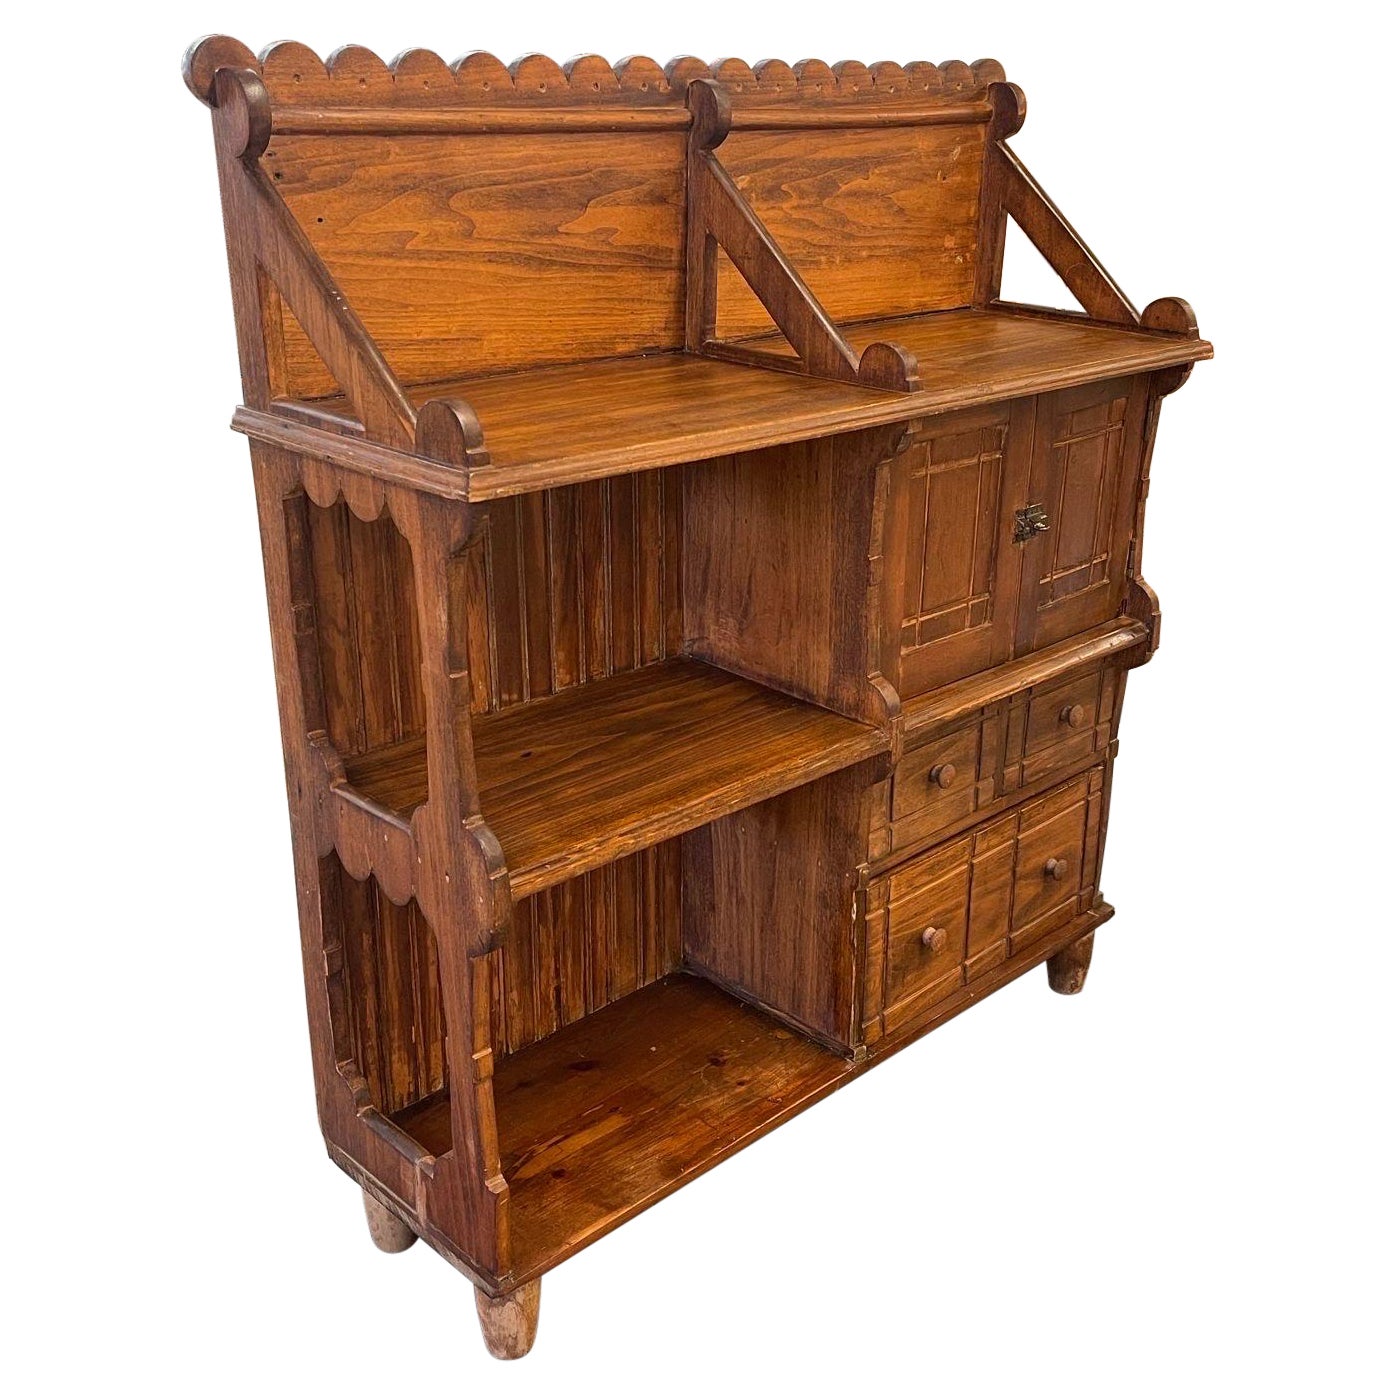 Vieille bibliothèque et meuble de rangement de style Arts and Craft primitif en bois sculpté